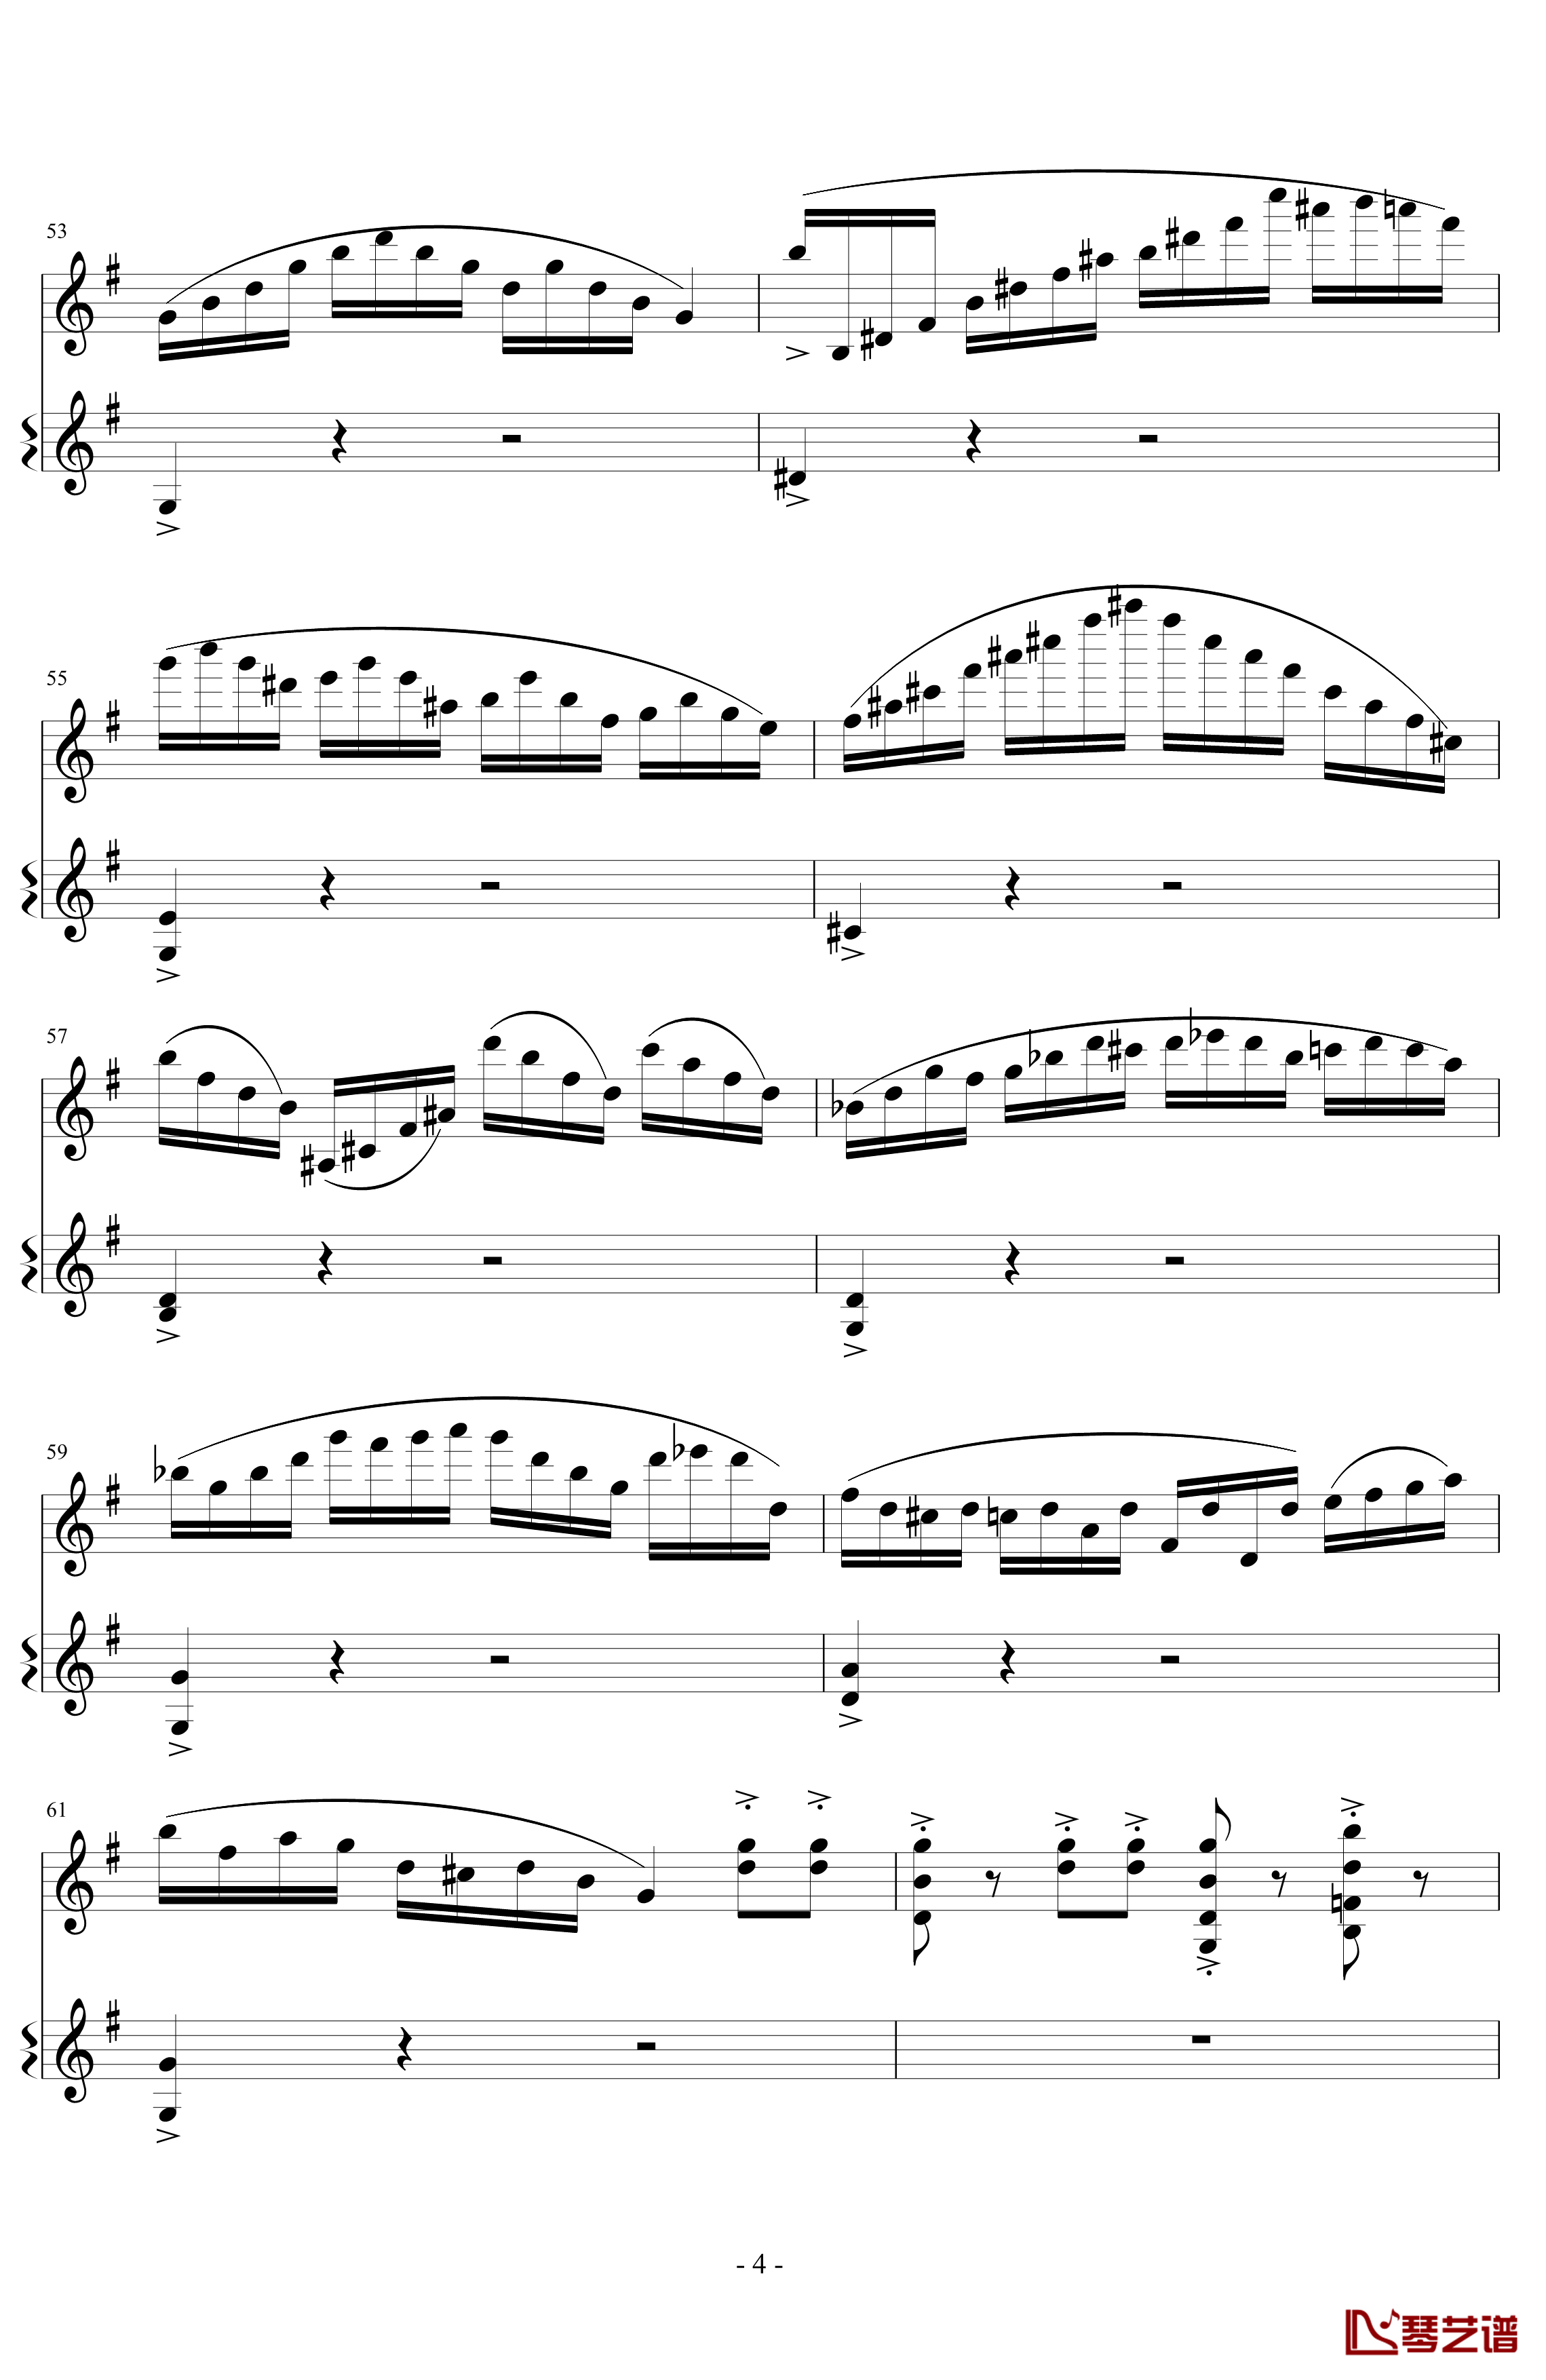 意大利国歌变奏曲钢琴谱-DXF4